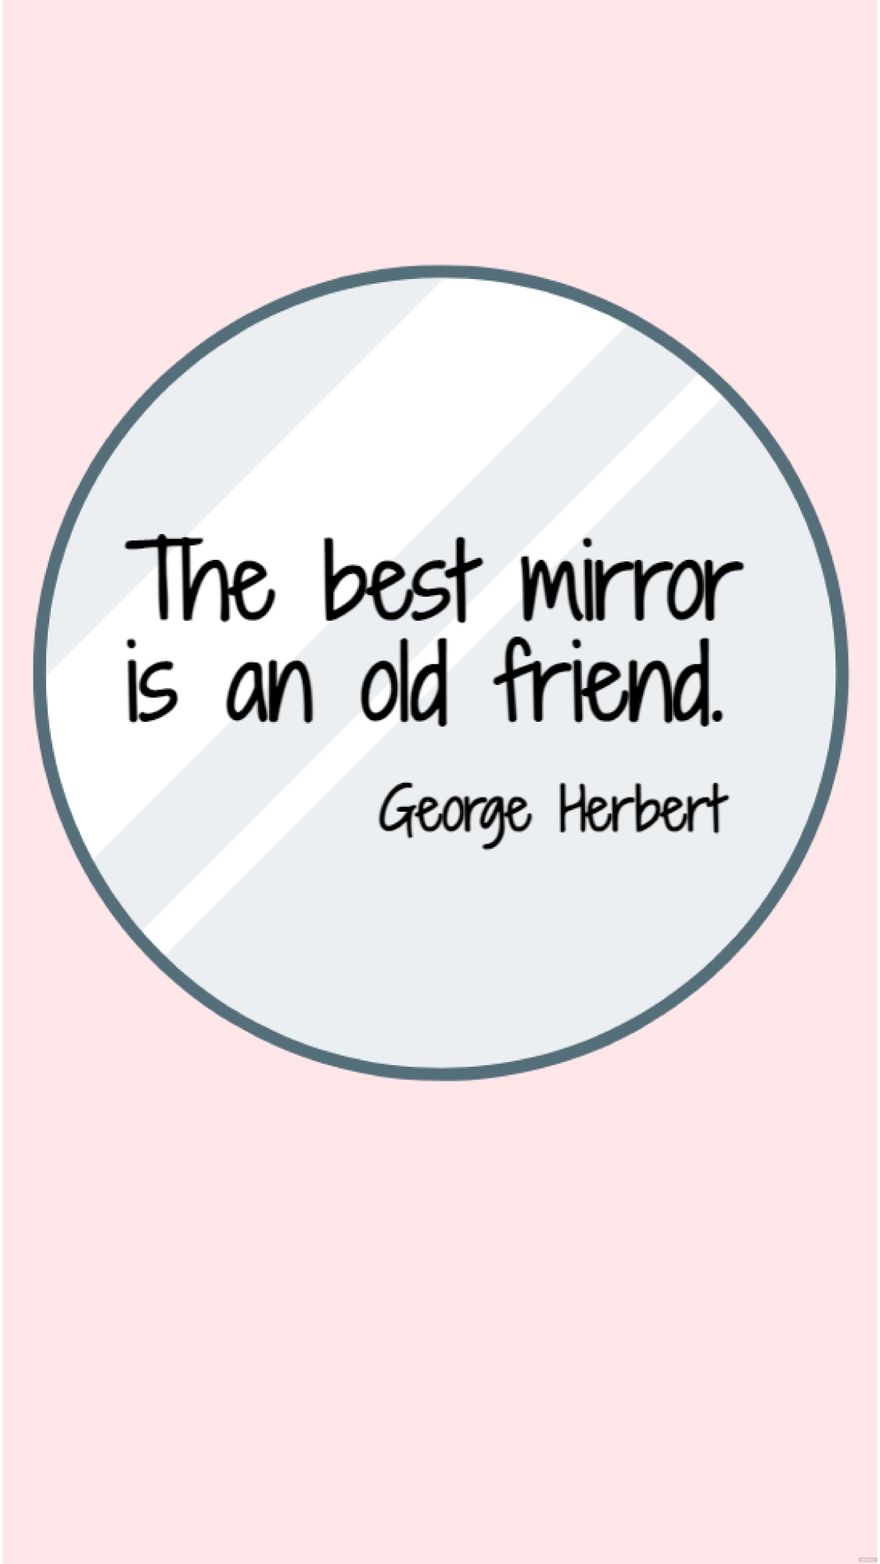 George Herbert - The best mirror is an old friend. in JPG